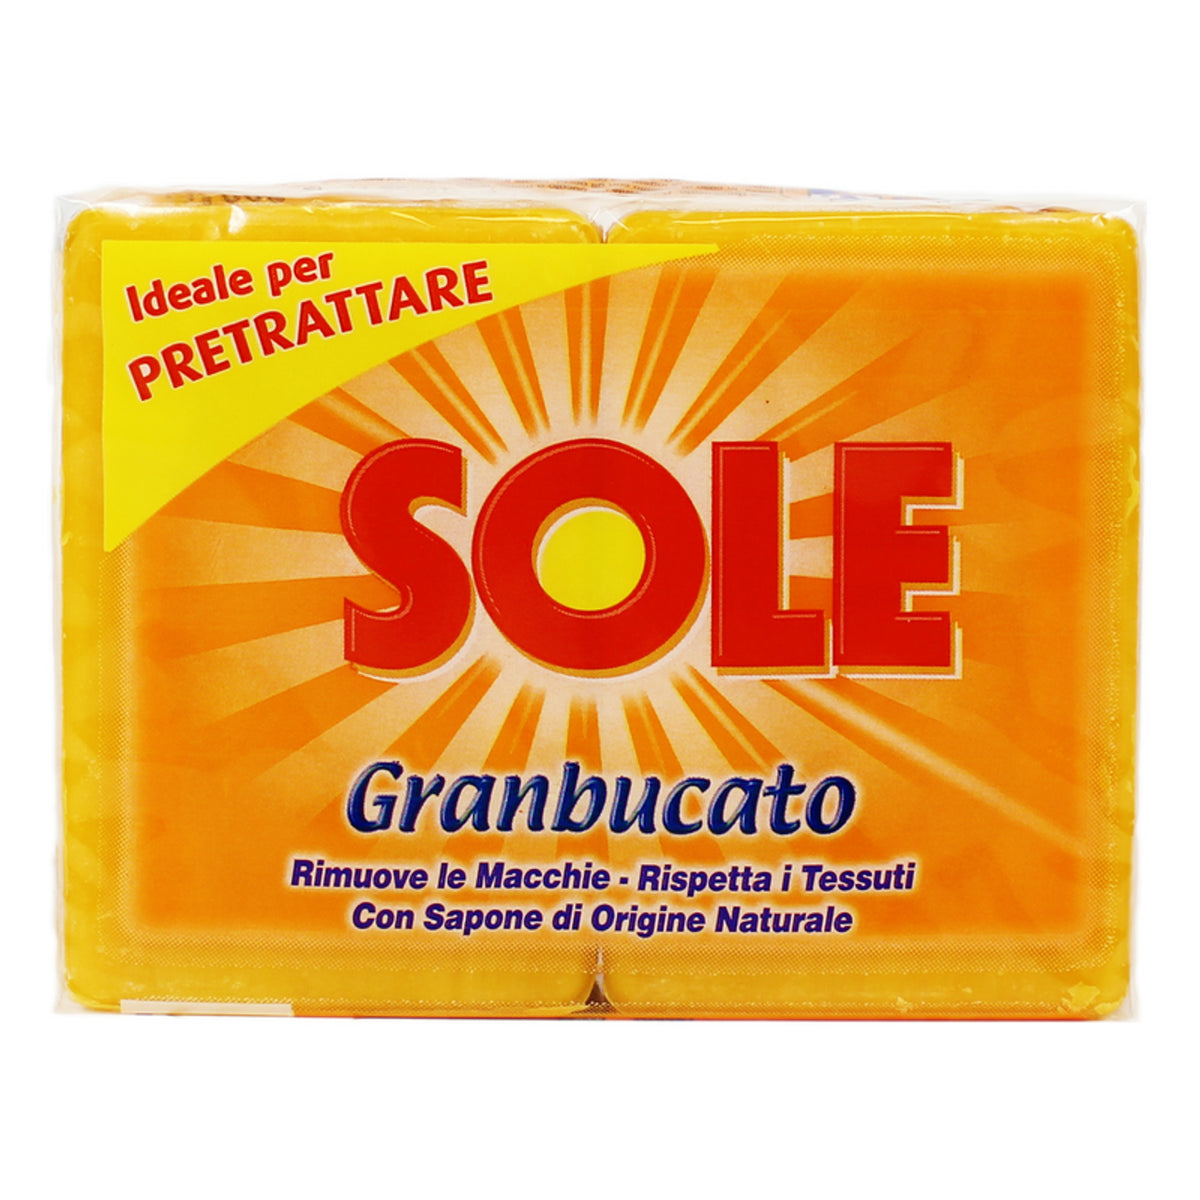 Sun soap laundry marseille pieces 2 pieces 500 gr